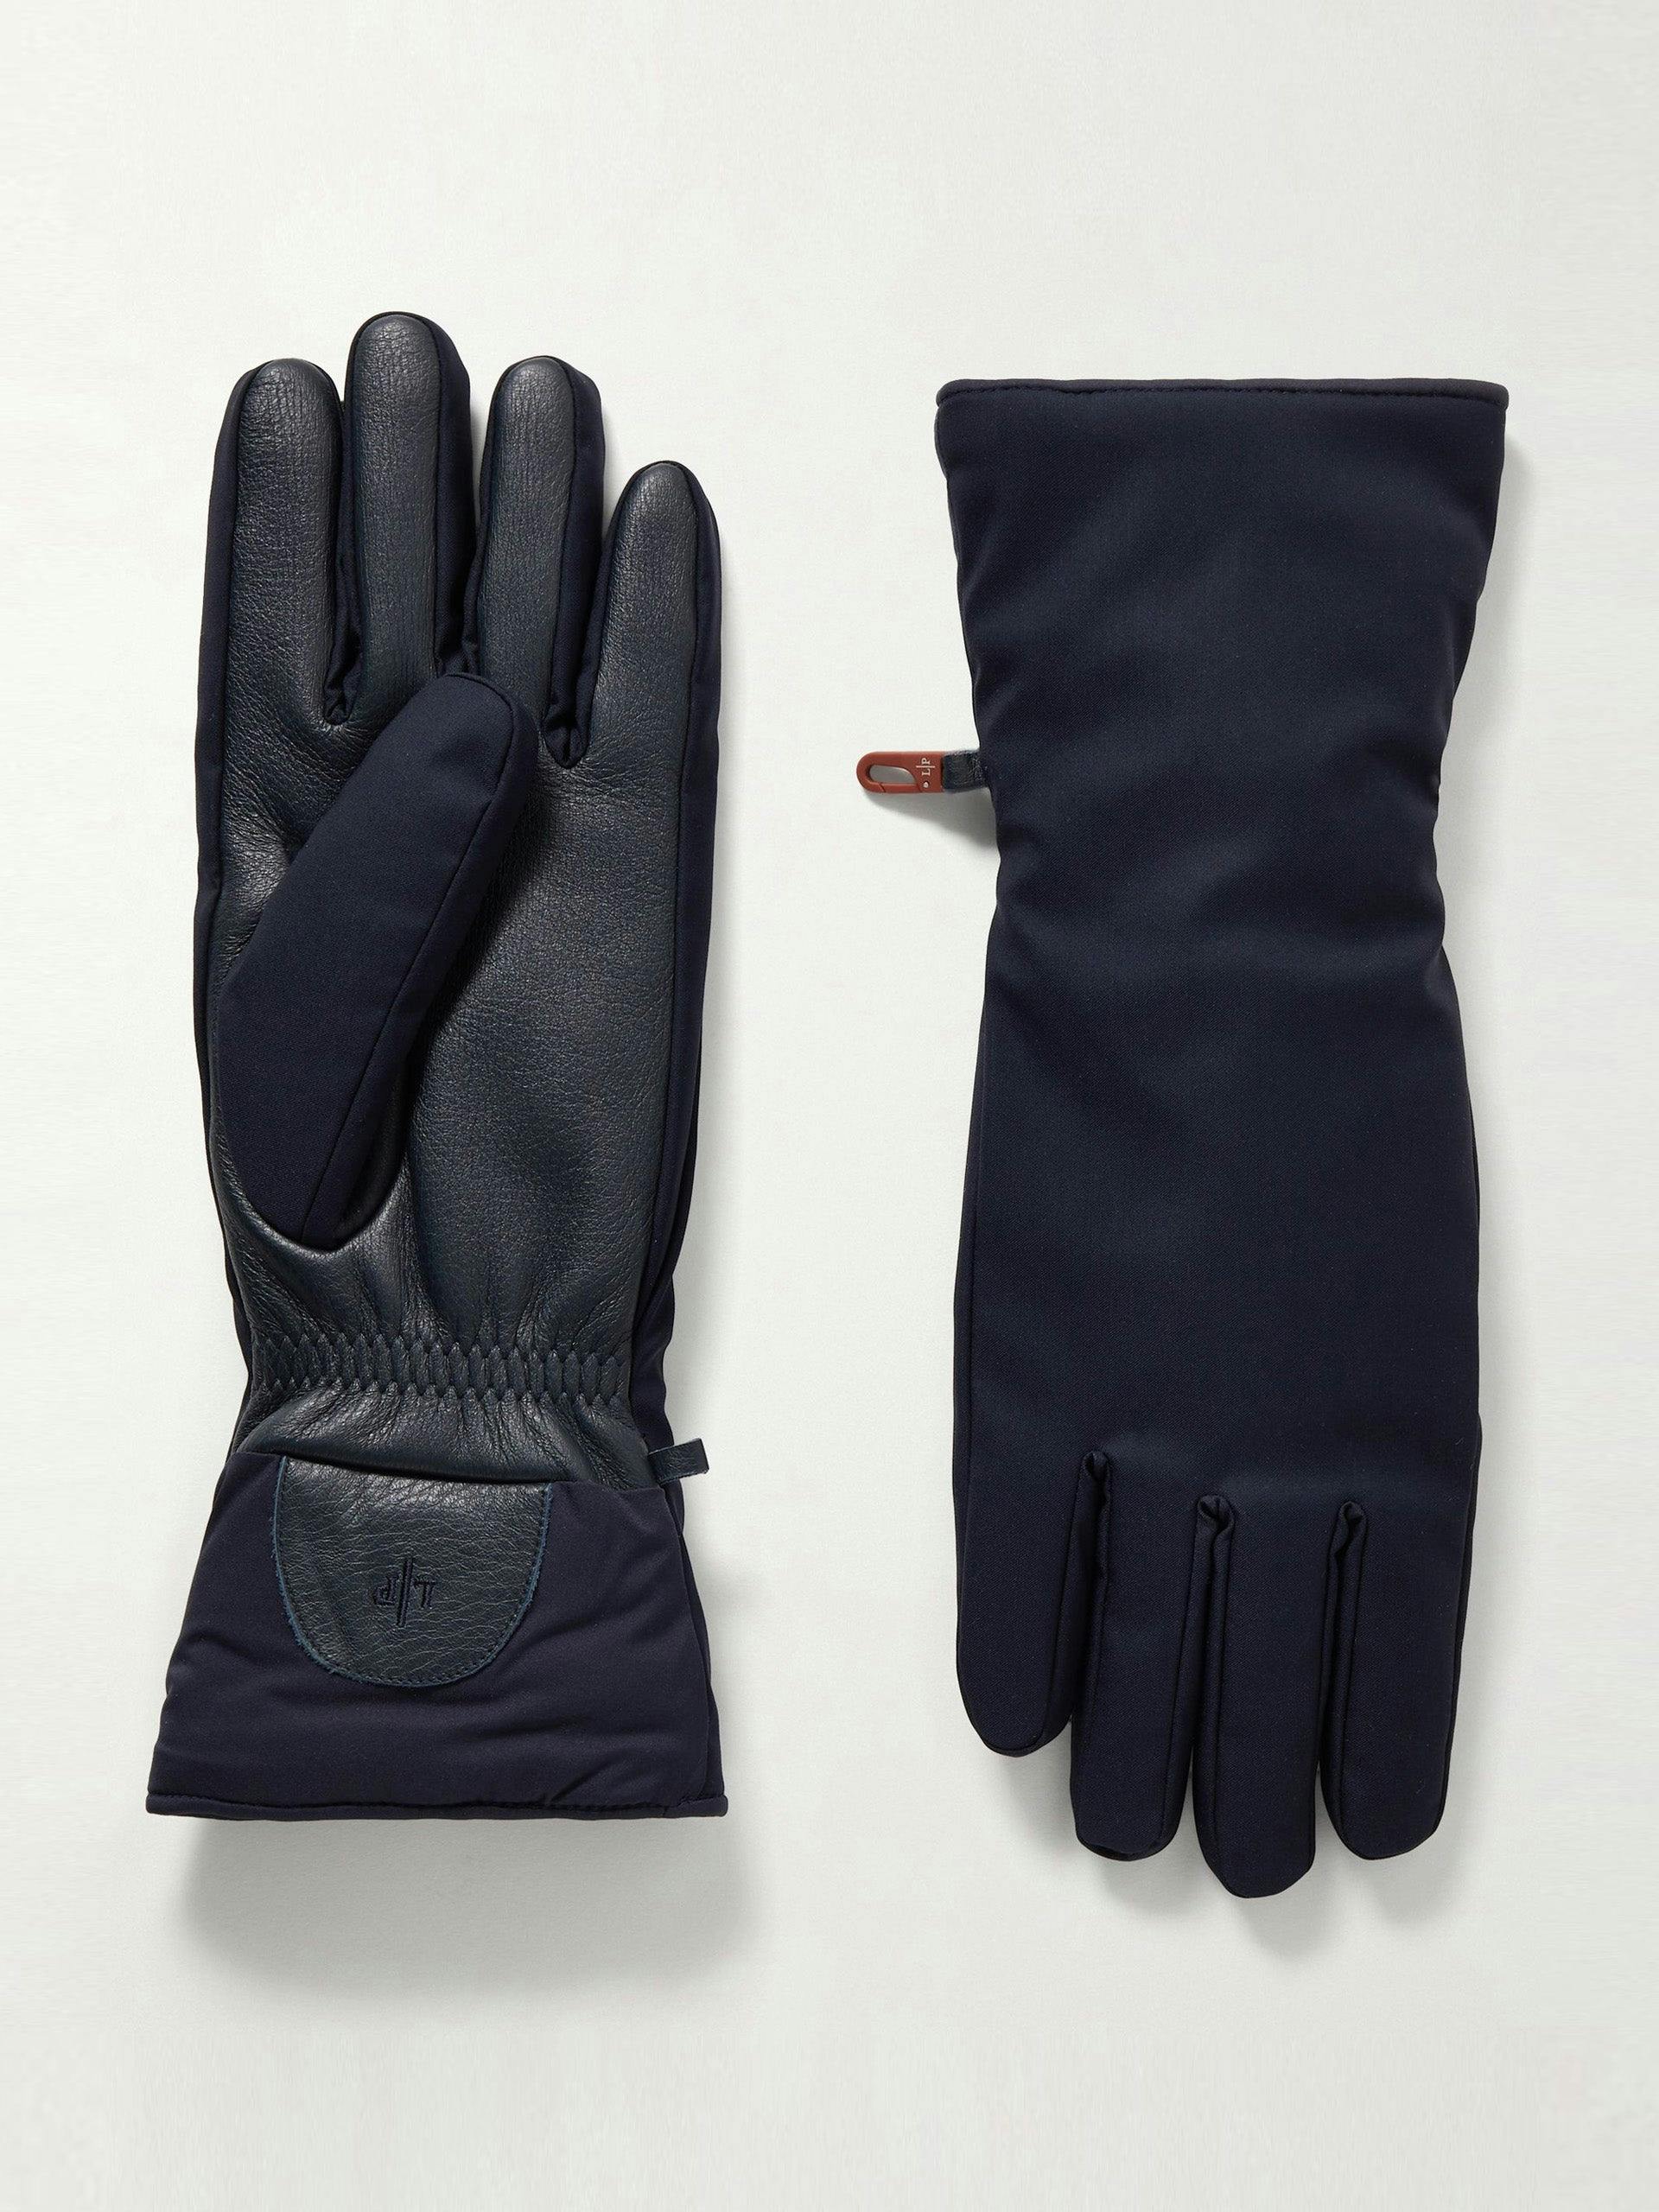 Leather-trimmed ski gloves